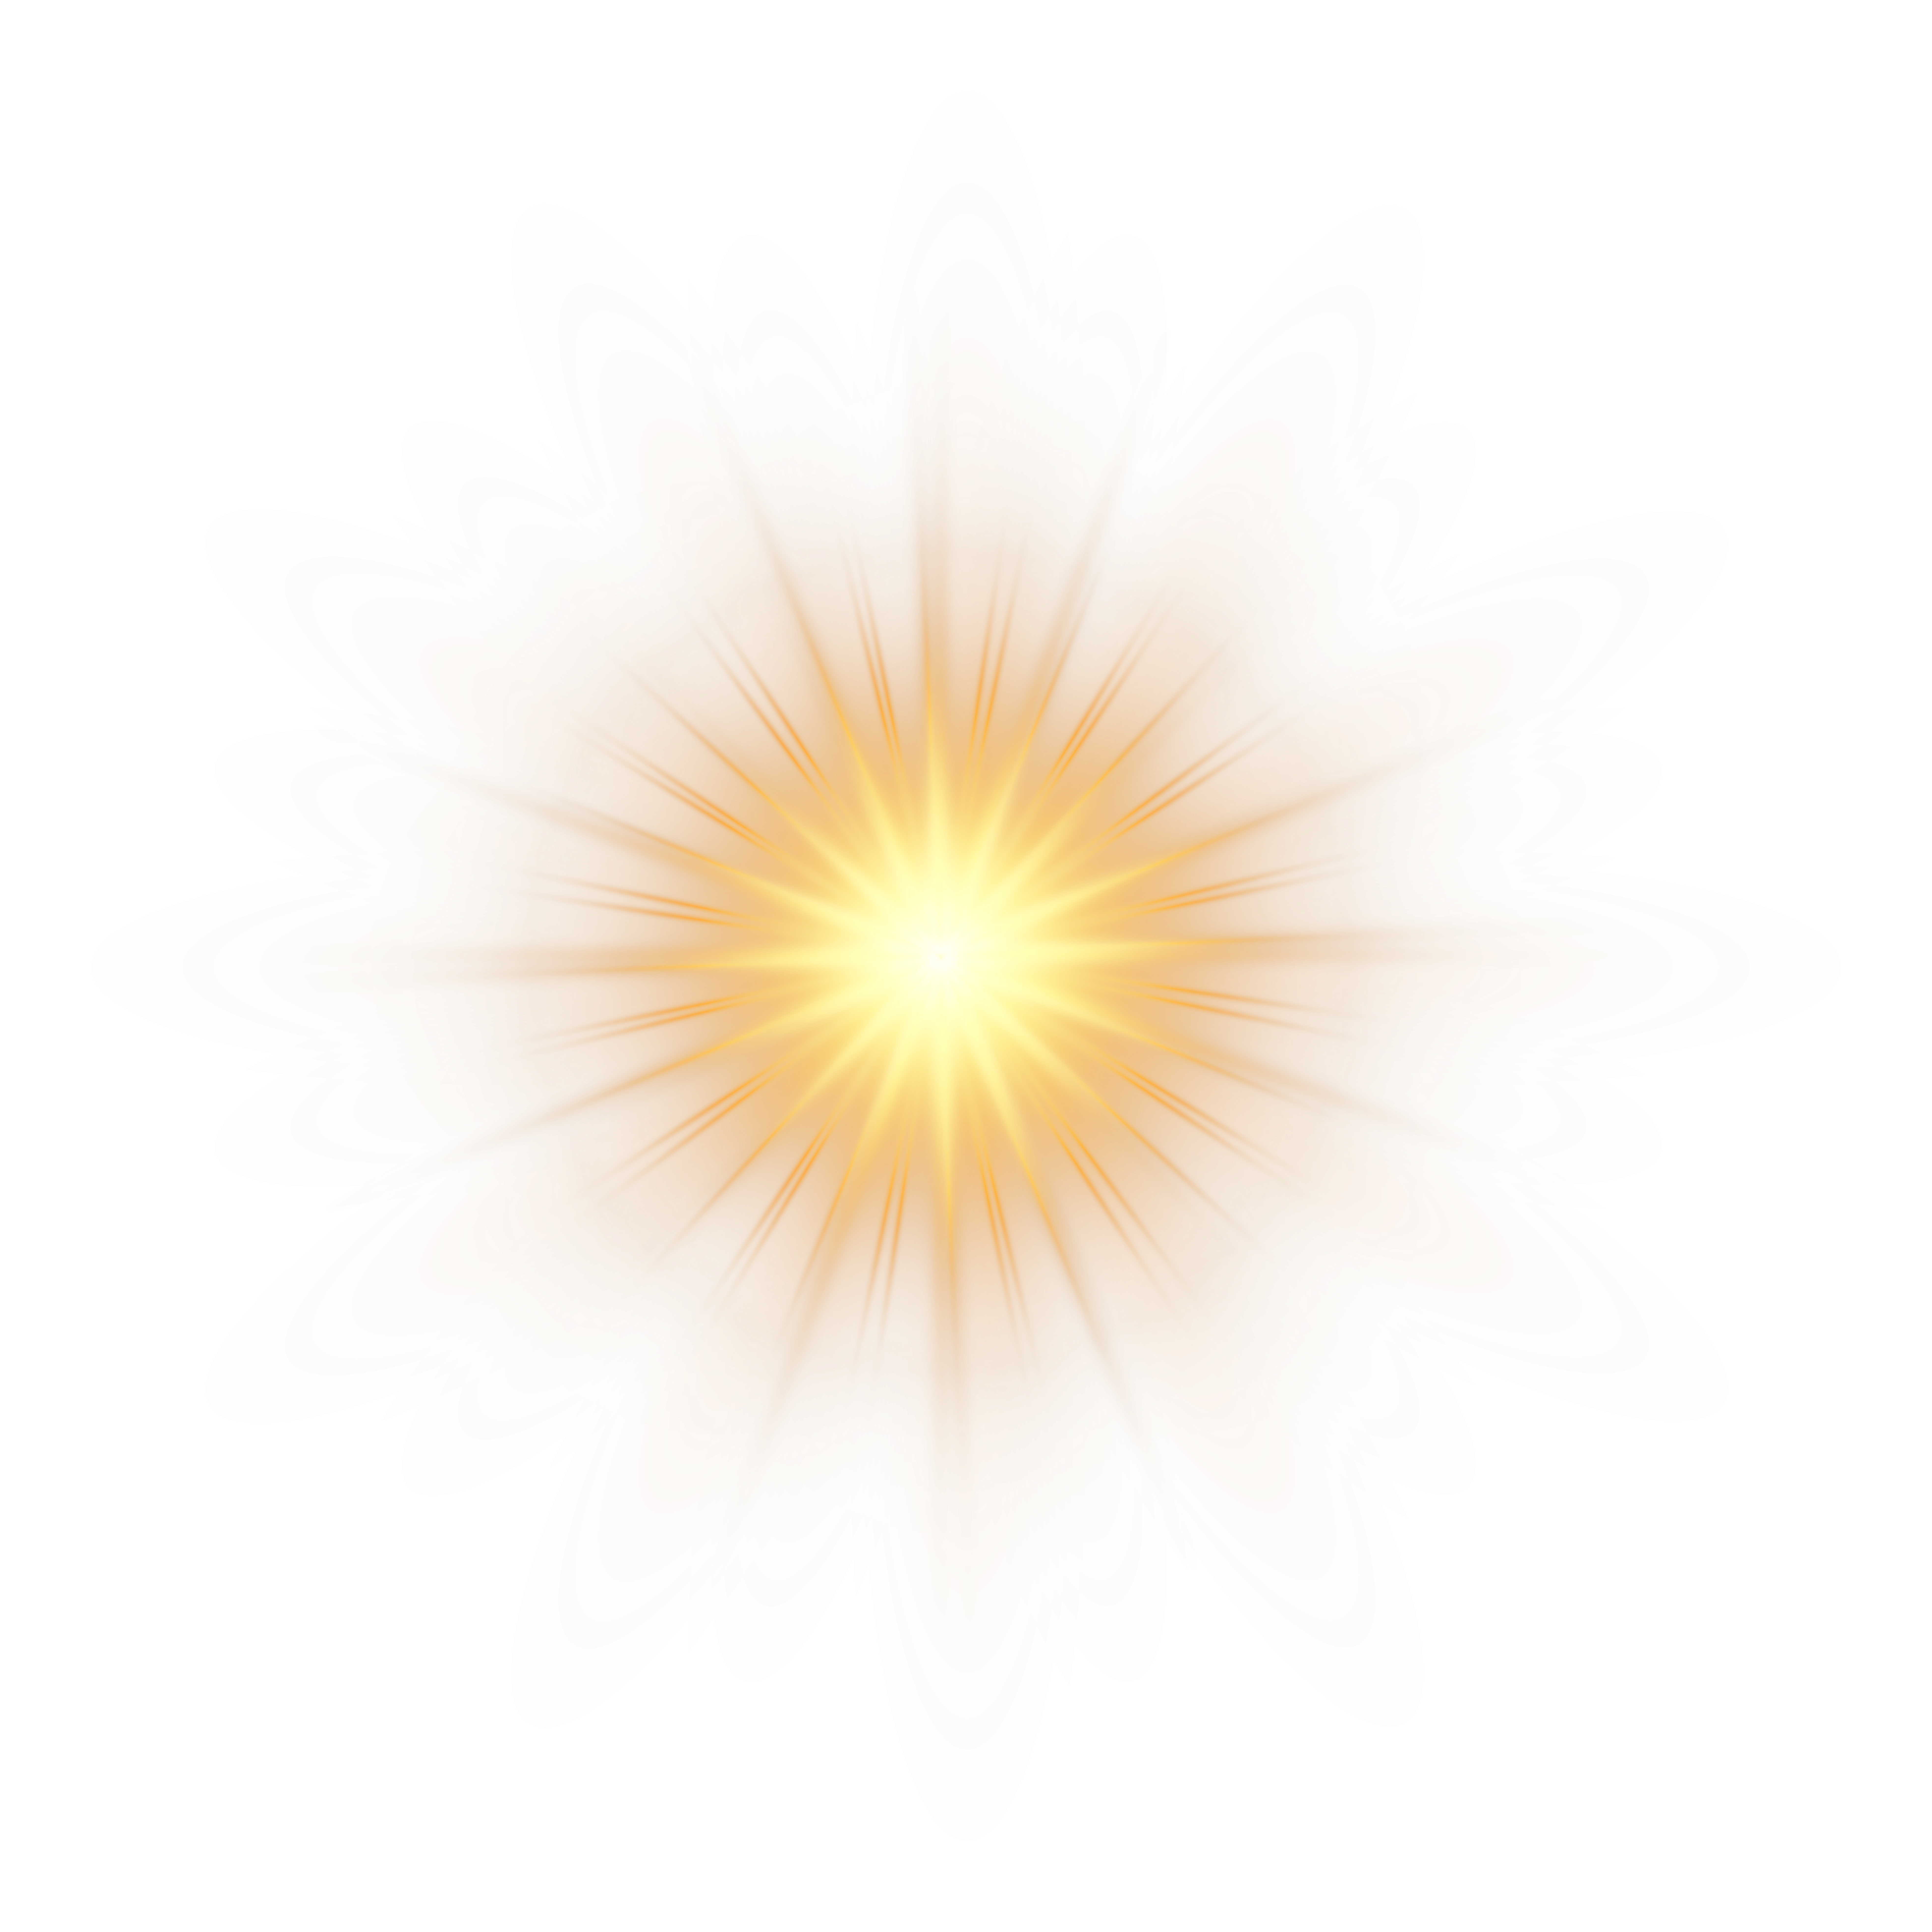 Radiant Sunburst Graphic PNG